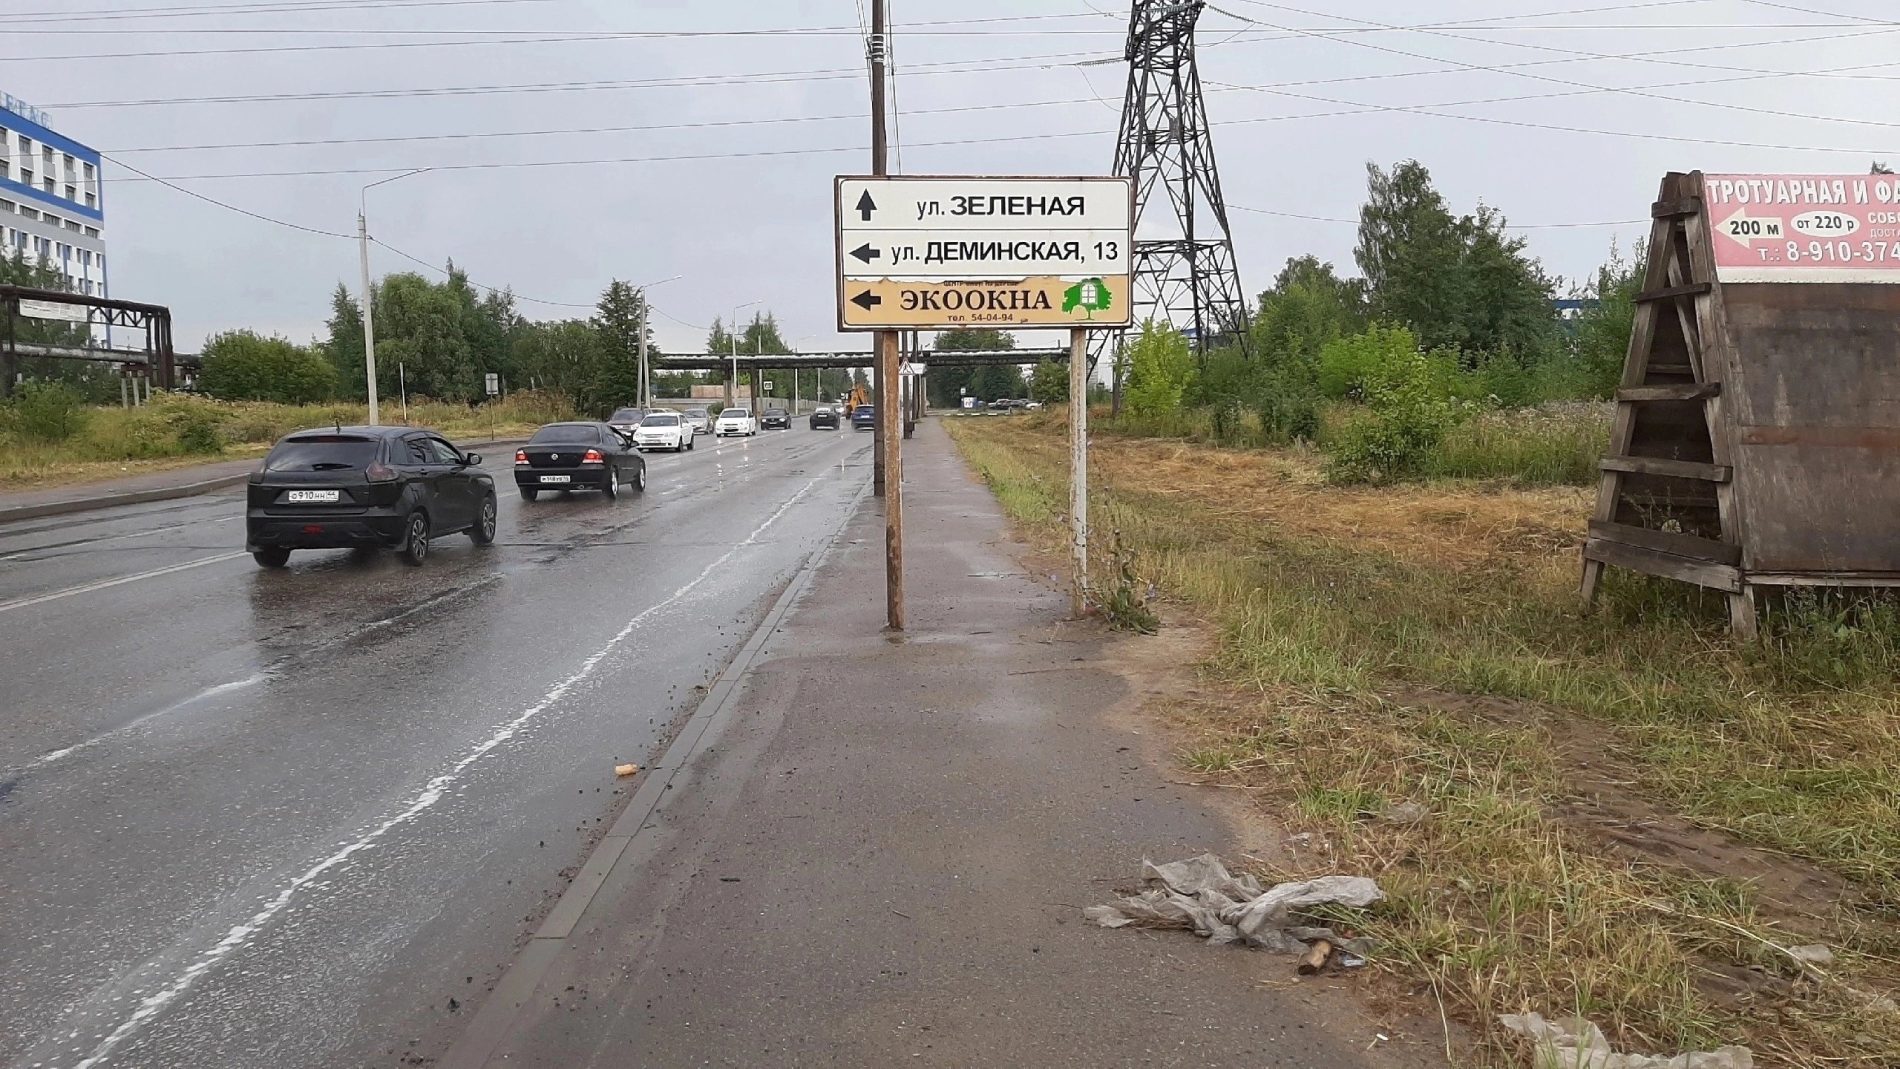 На тротуаре в Костроме нашли странные указатели